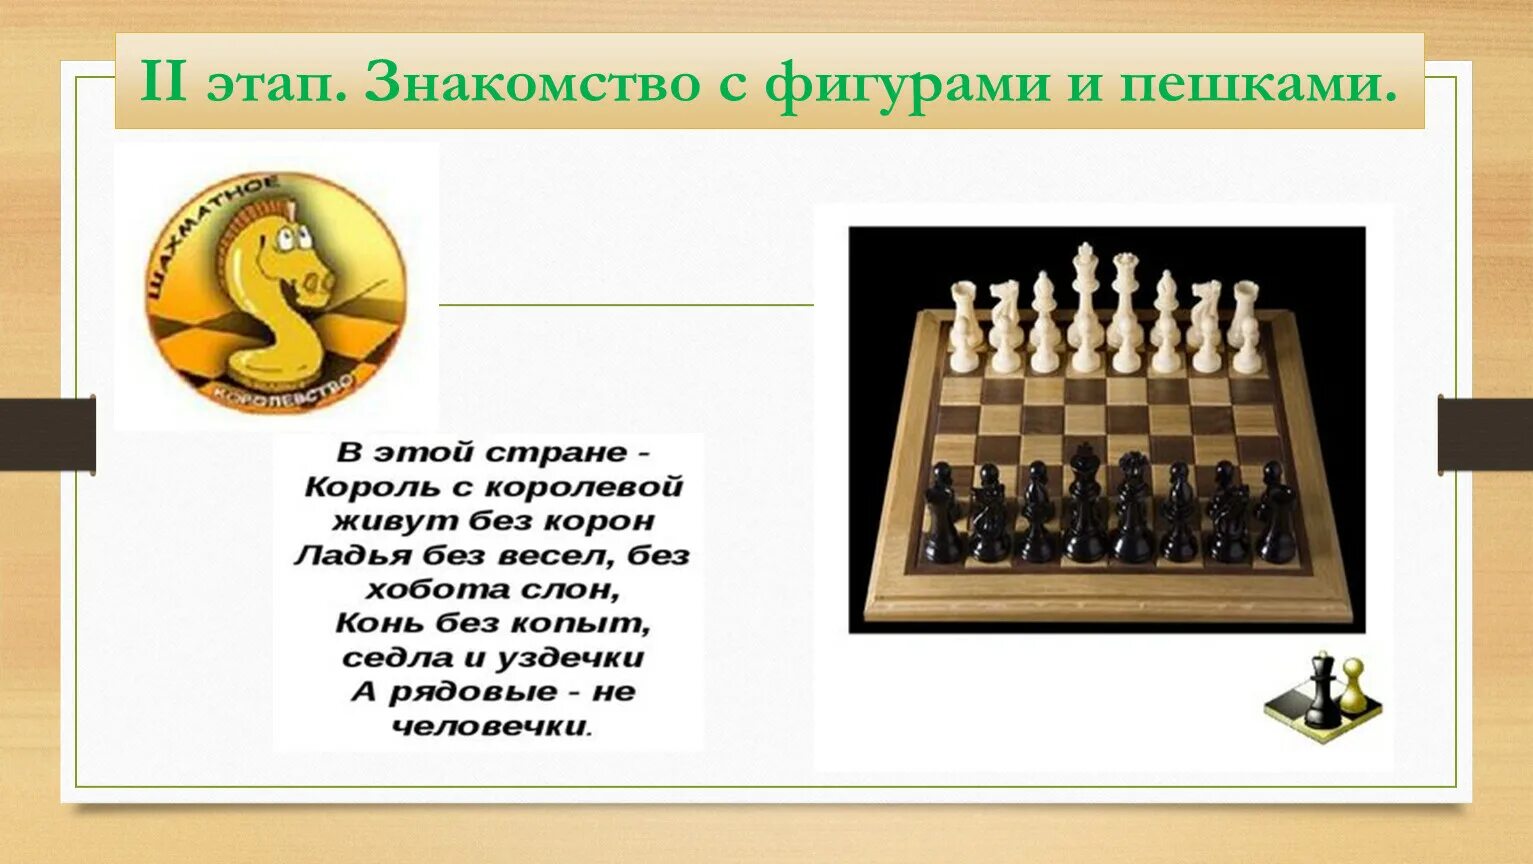 История шахмат. Название фигур в шахматах. Беседа с детьми на тему шахмат. Доклад на тему шахматы. Можно рубить короля